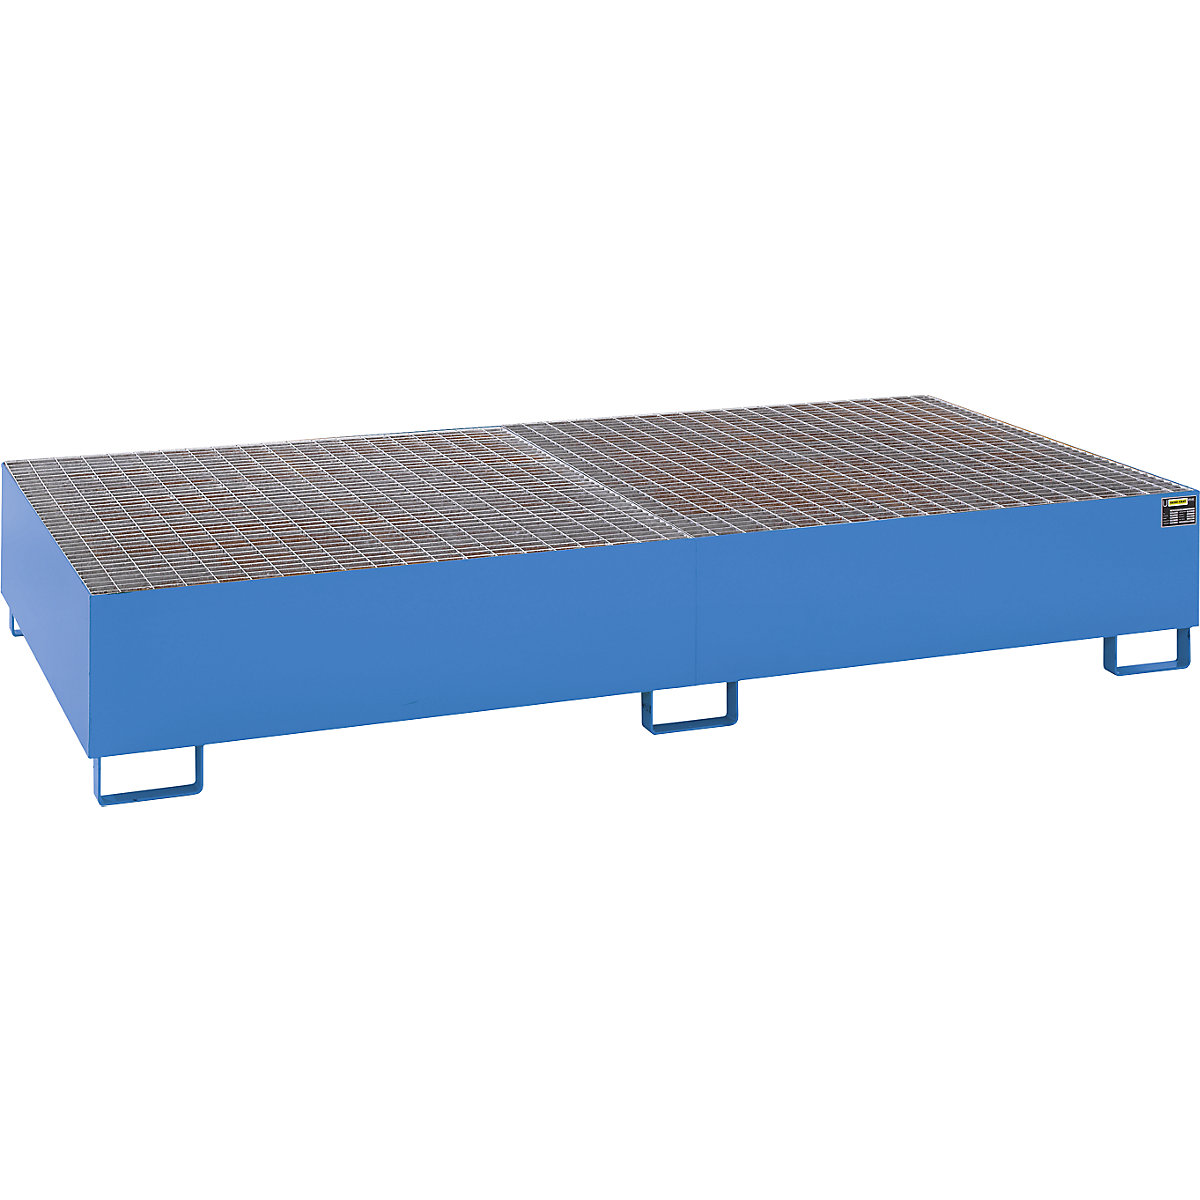 Vasca di raccolta in acciaio per serbatoi IBC / KTC – eurokraft pro, lungh. x largh. x alt. 2650 x 1300 x 435 mm, capacità 1000 l, con verniciatura, blu RAL 5012-3